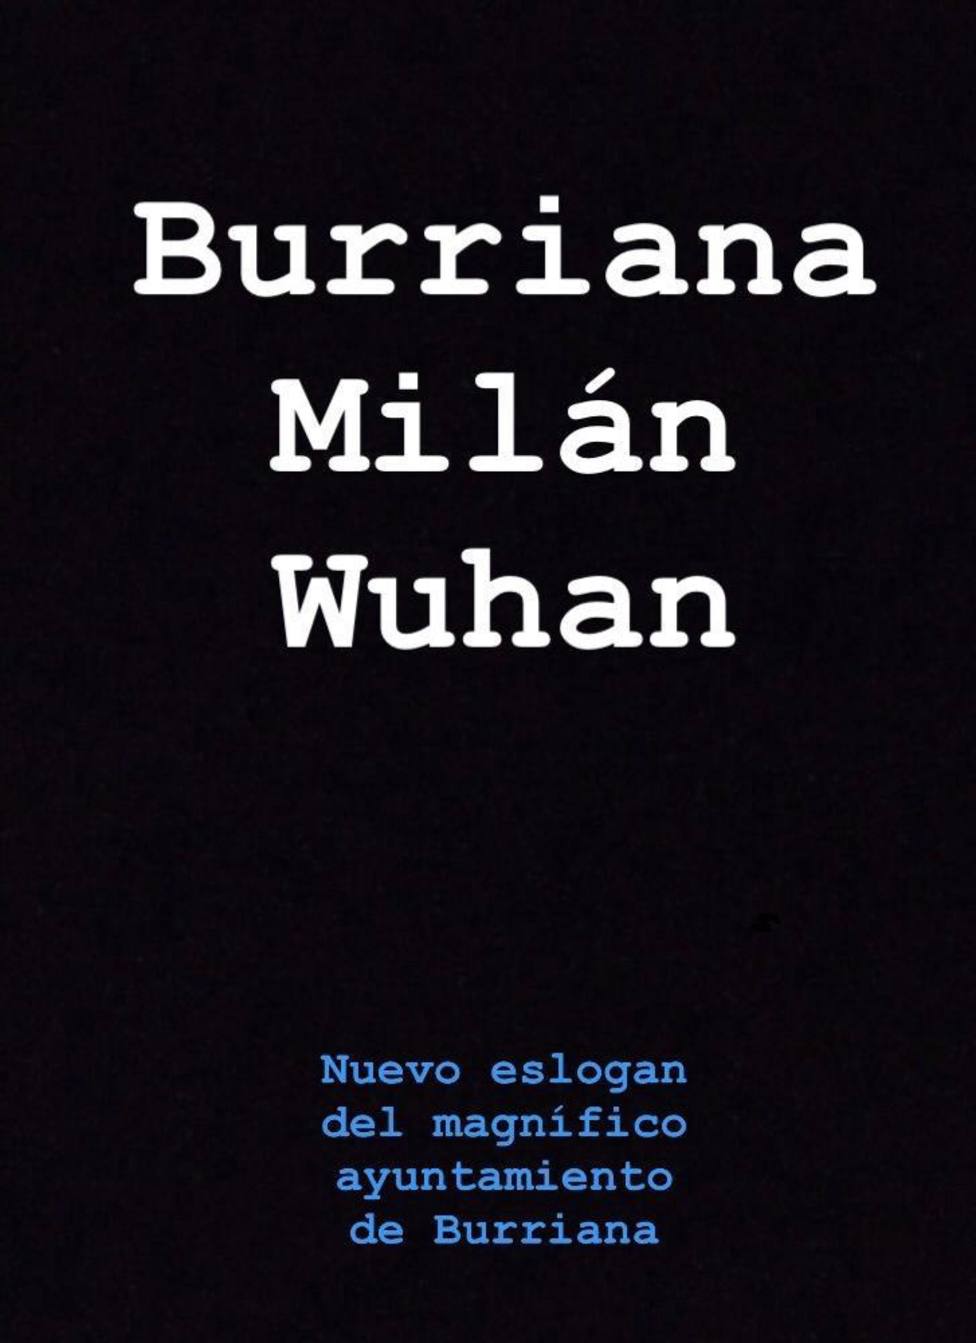 Burriana, Milán, Wuhan